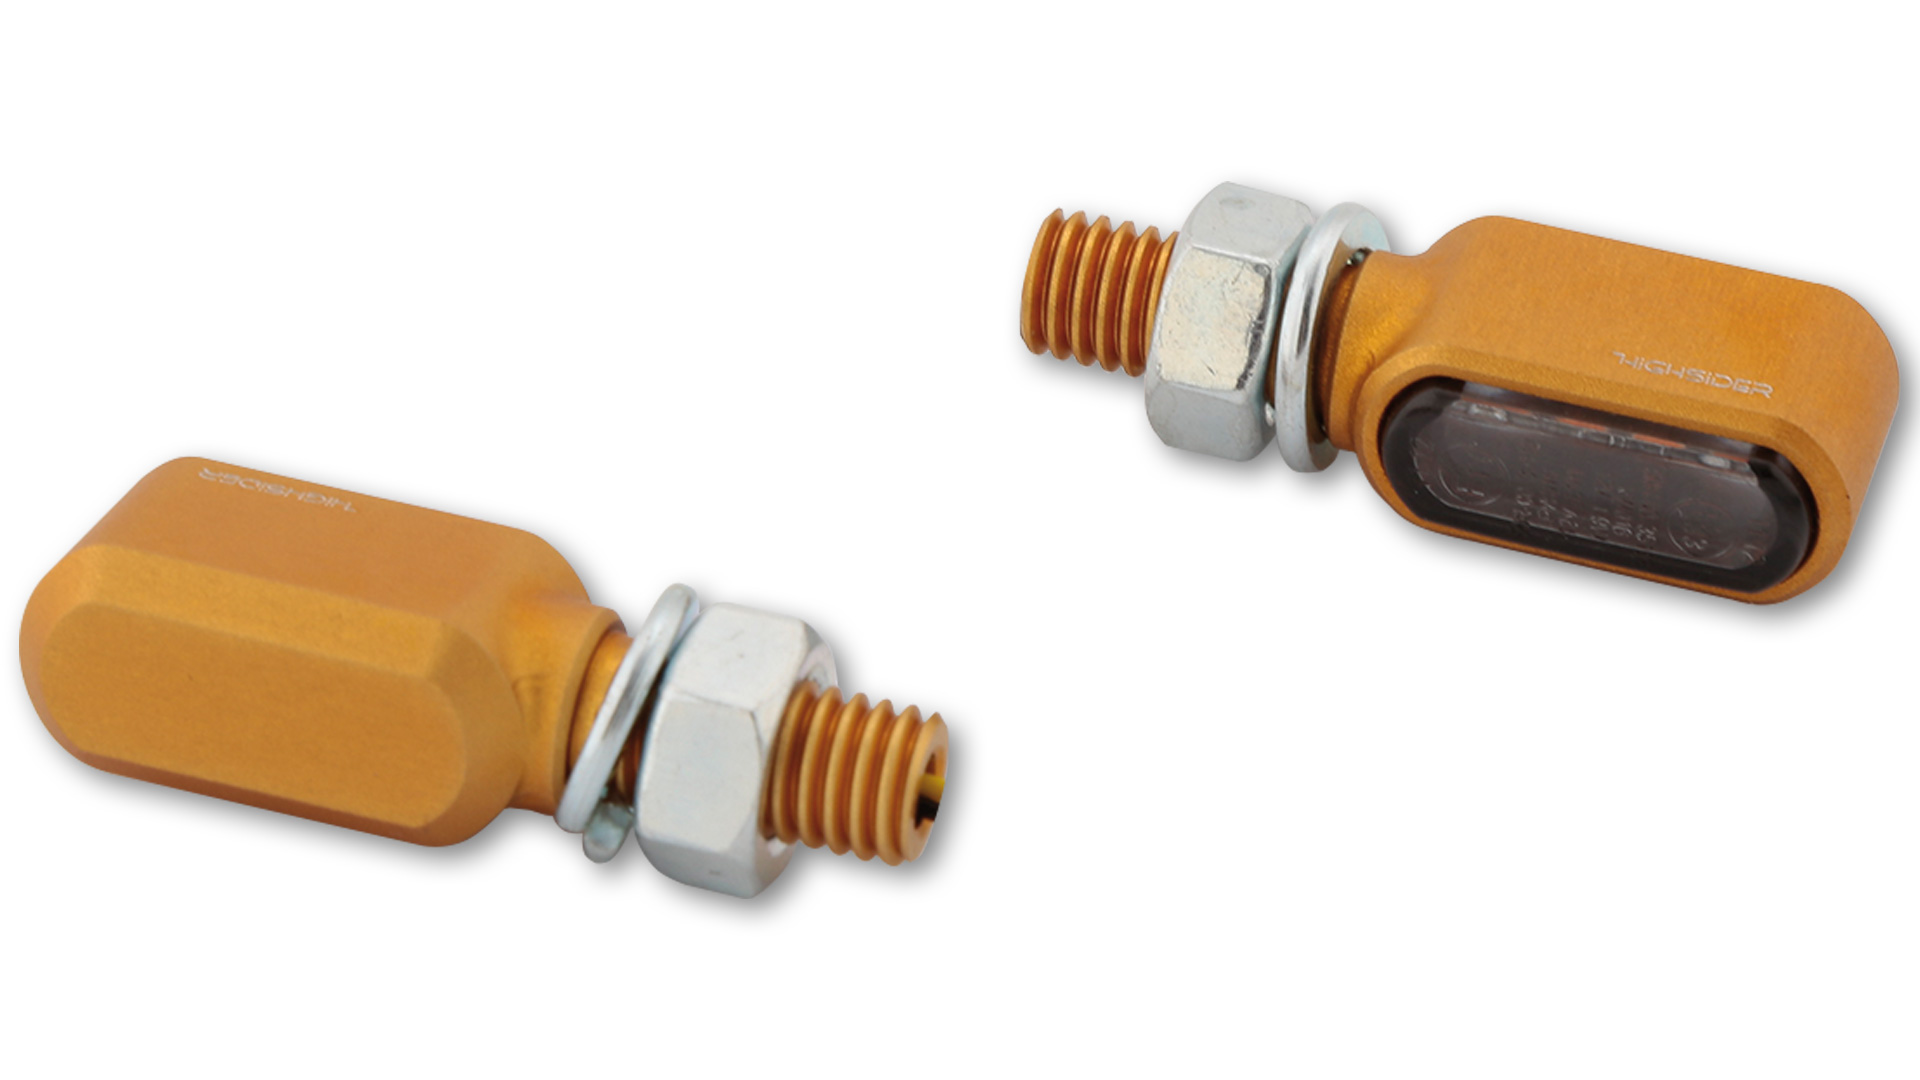 LED Blinker mit getöntem Glas, E-geprüft, Paar, in verschiedenen Farben erhältlich.&ltbr&gt&ltbr&gt